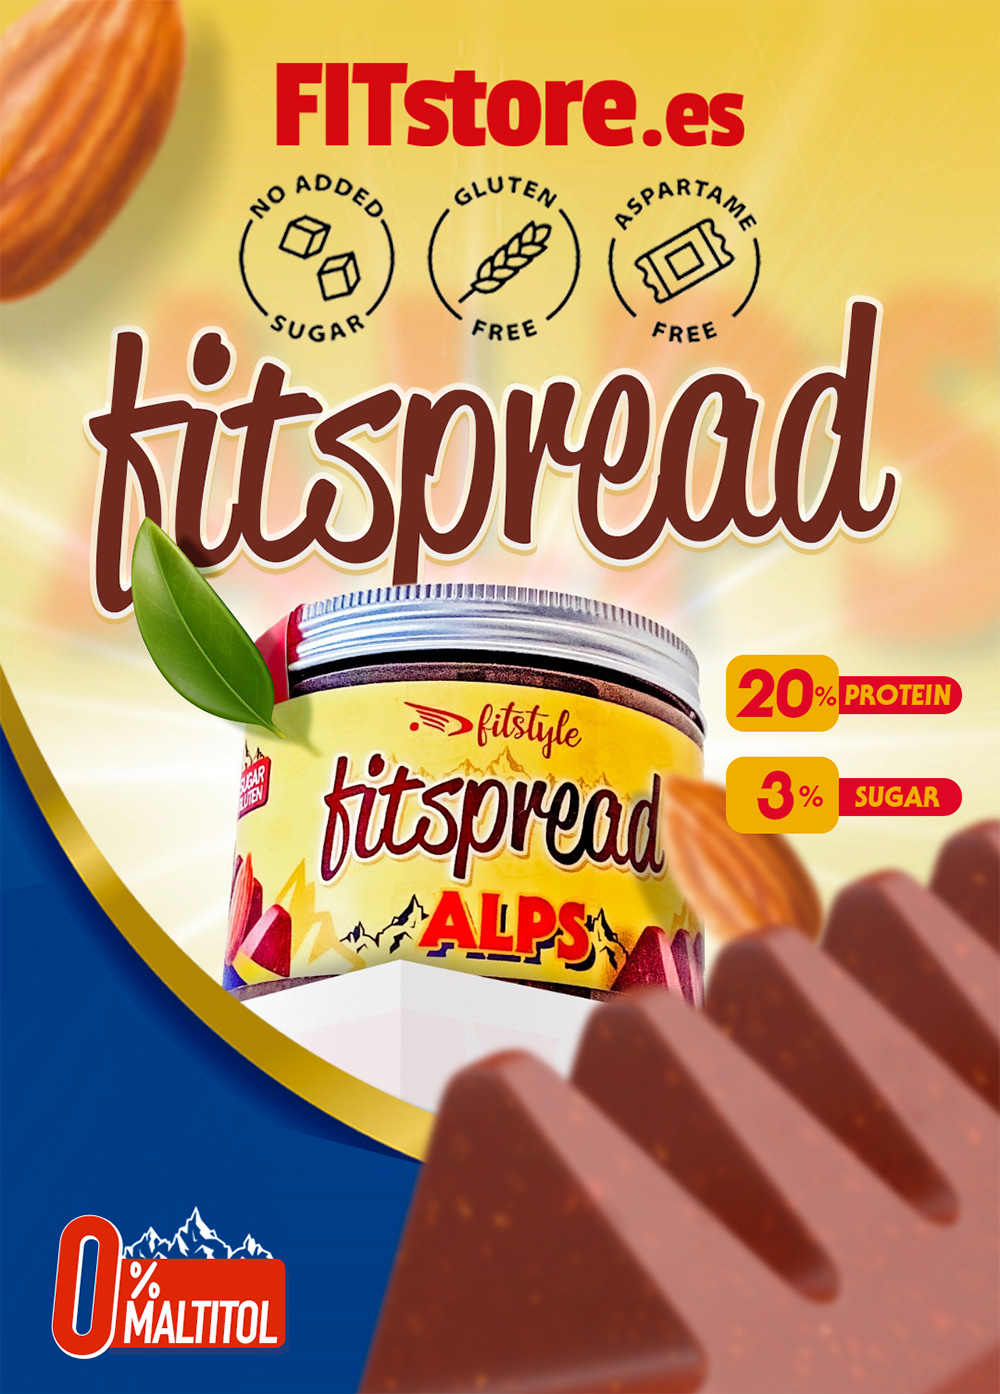 fitspread-alps_1.jpg